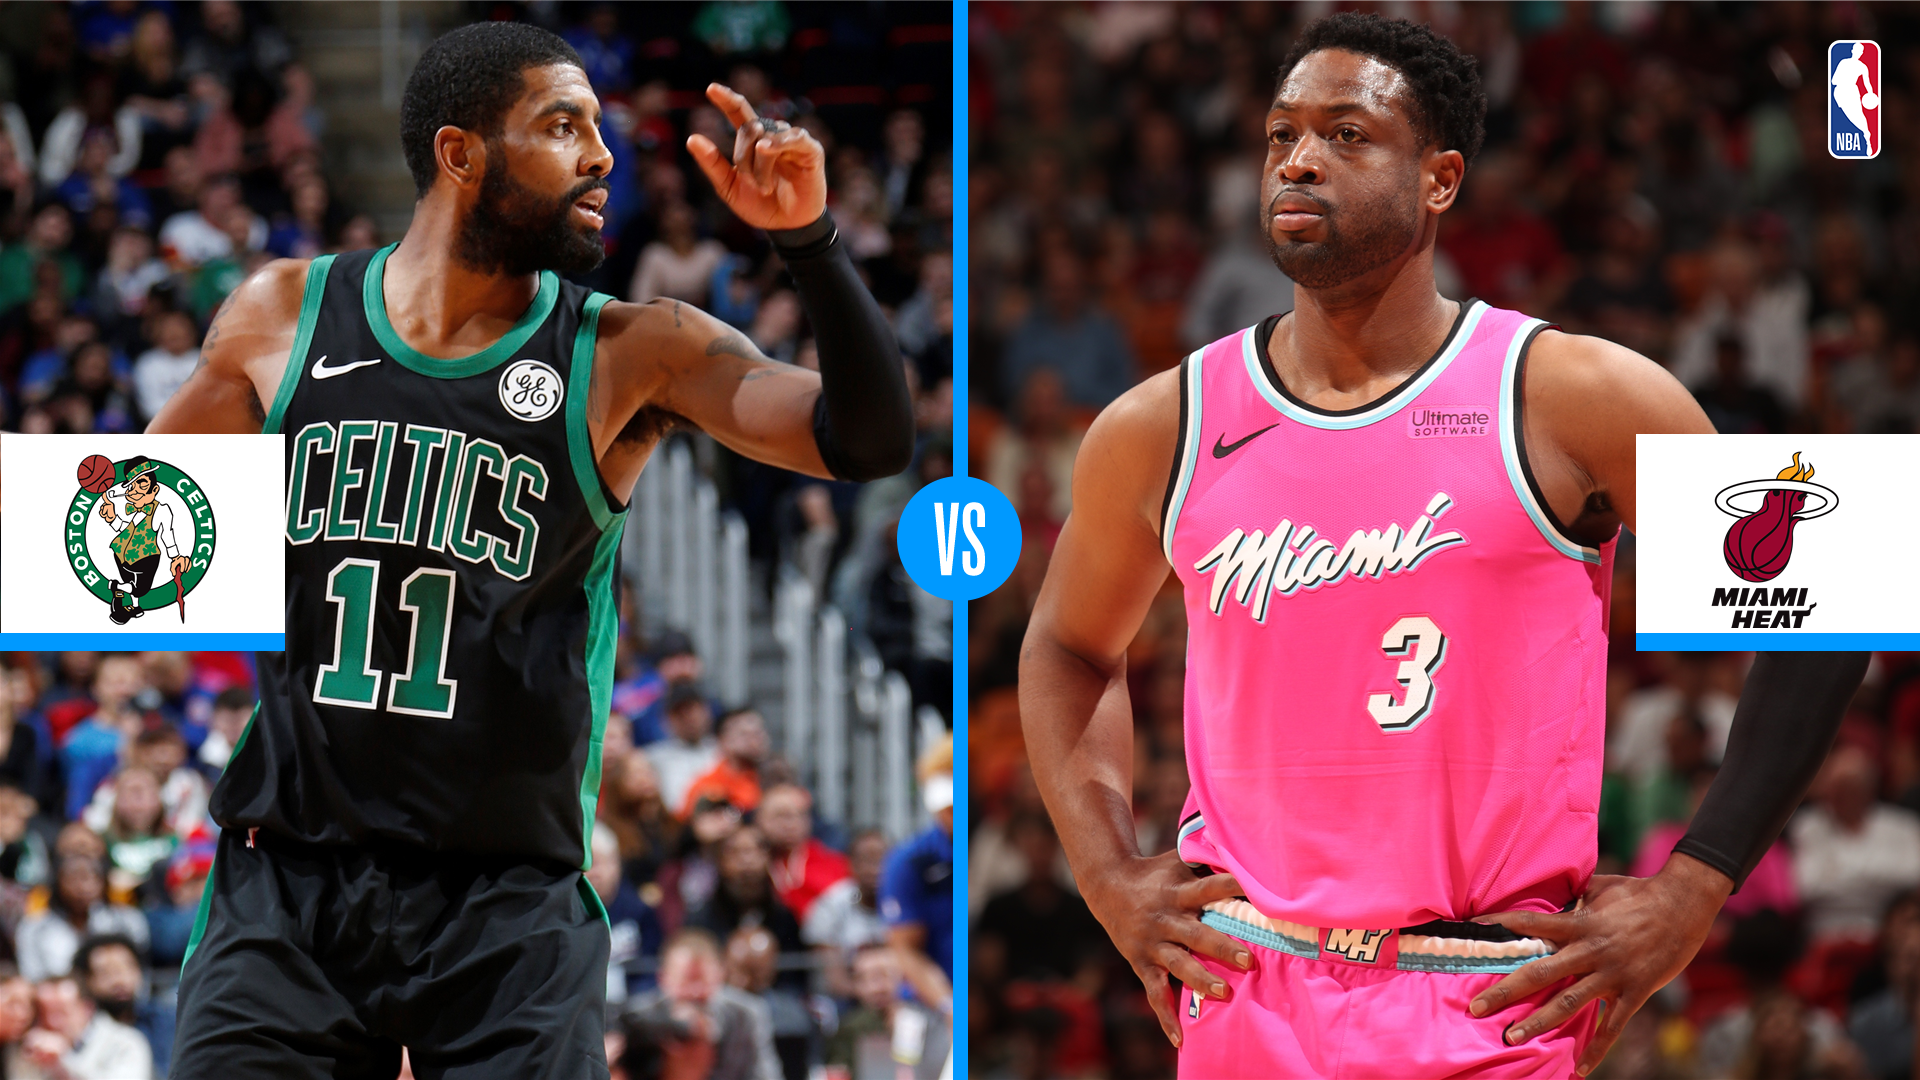 Boston Celtics vs Miami Heat: Game preview, live stream, TV channel, start time | NBA ...